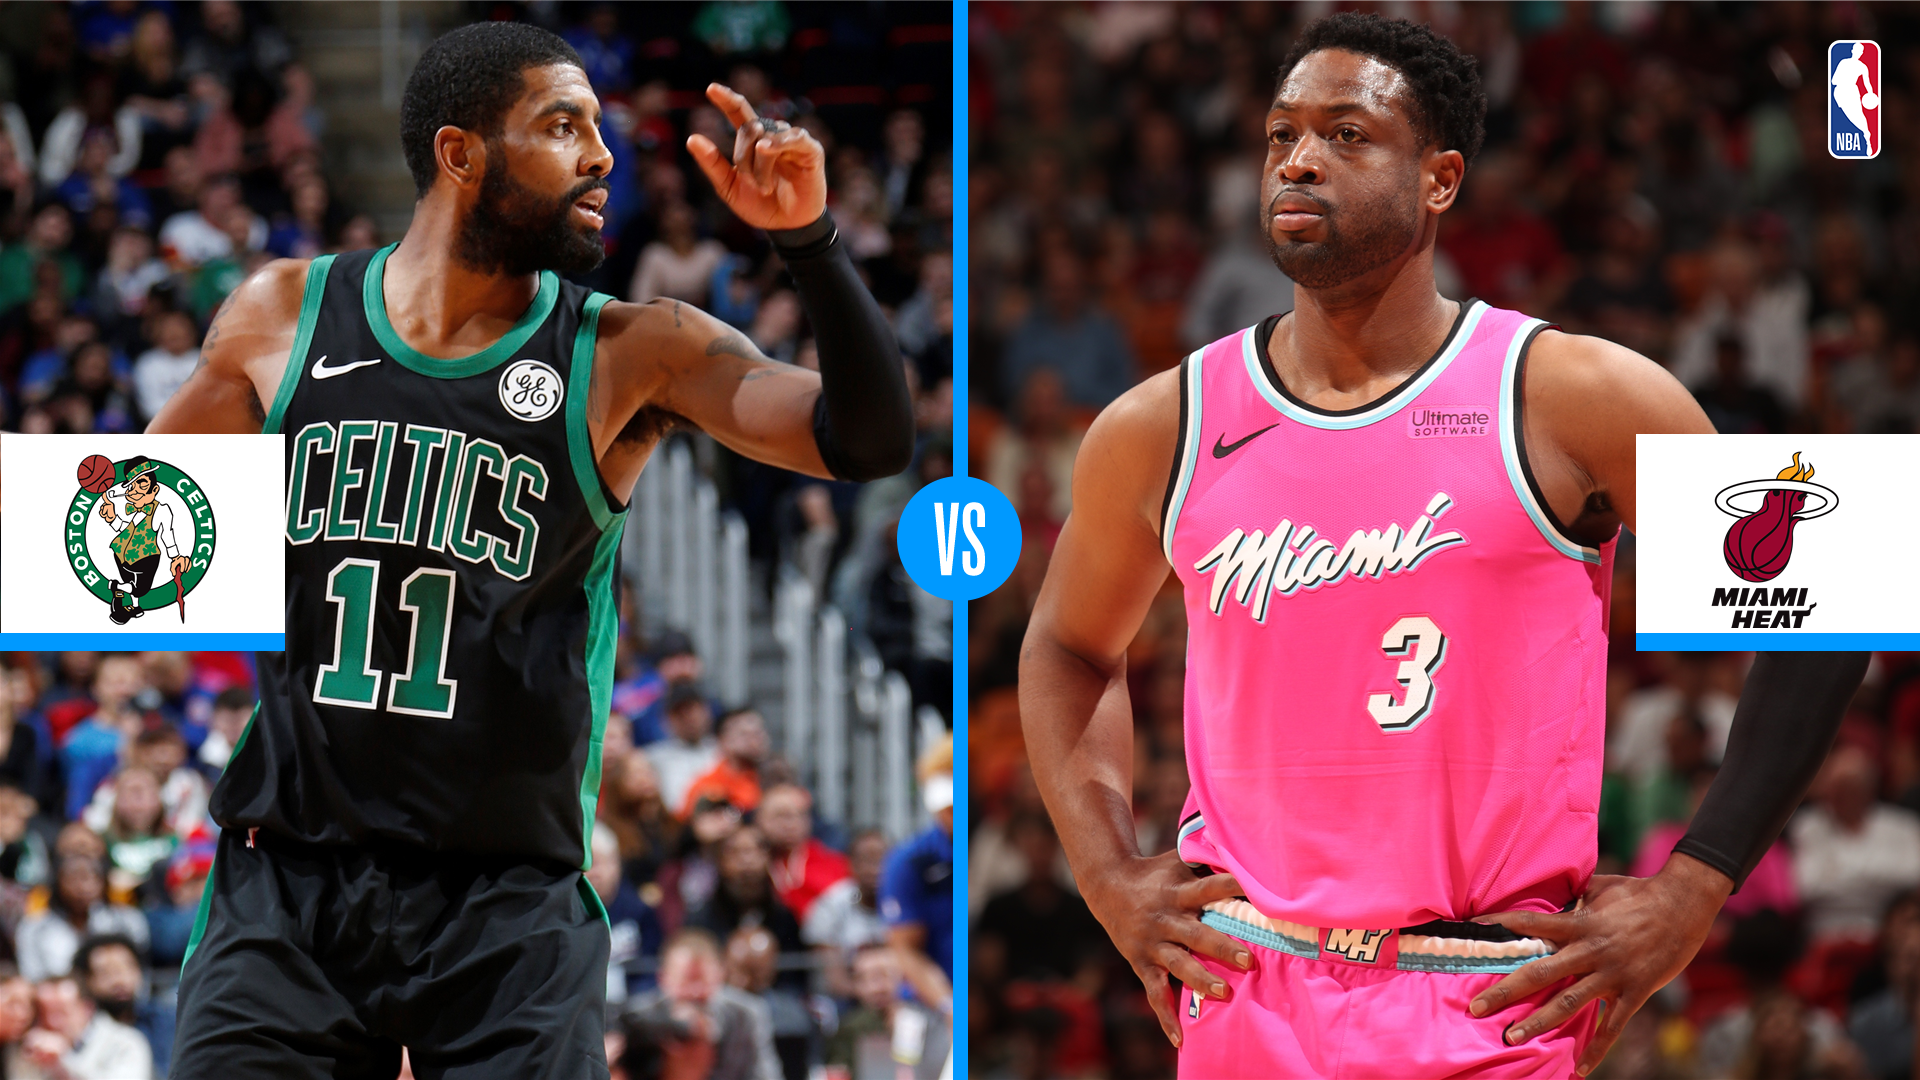 Boston Celtics vs Miami Heat: Game preview, live stream, TV channel, start time | NBA ...